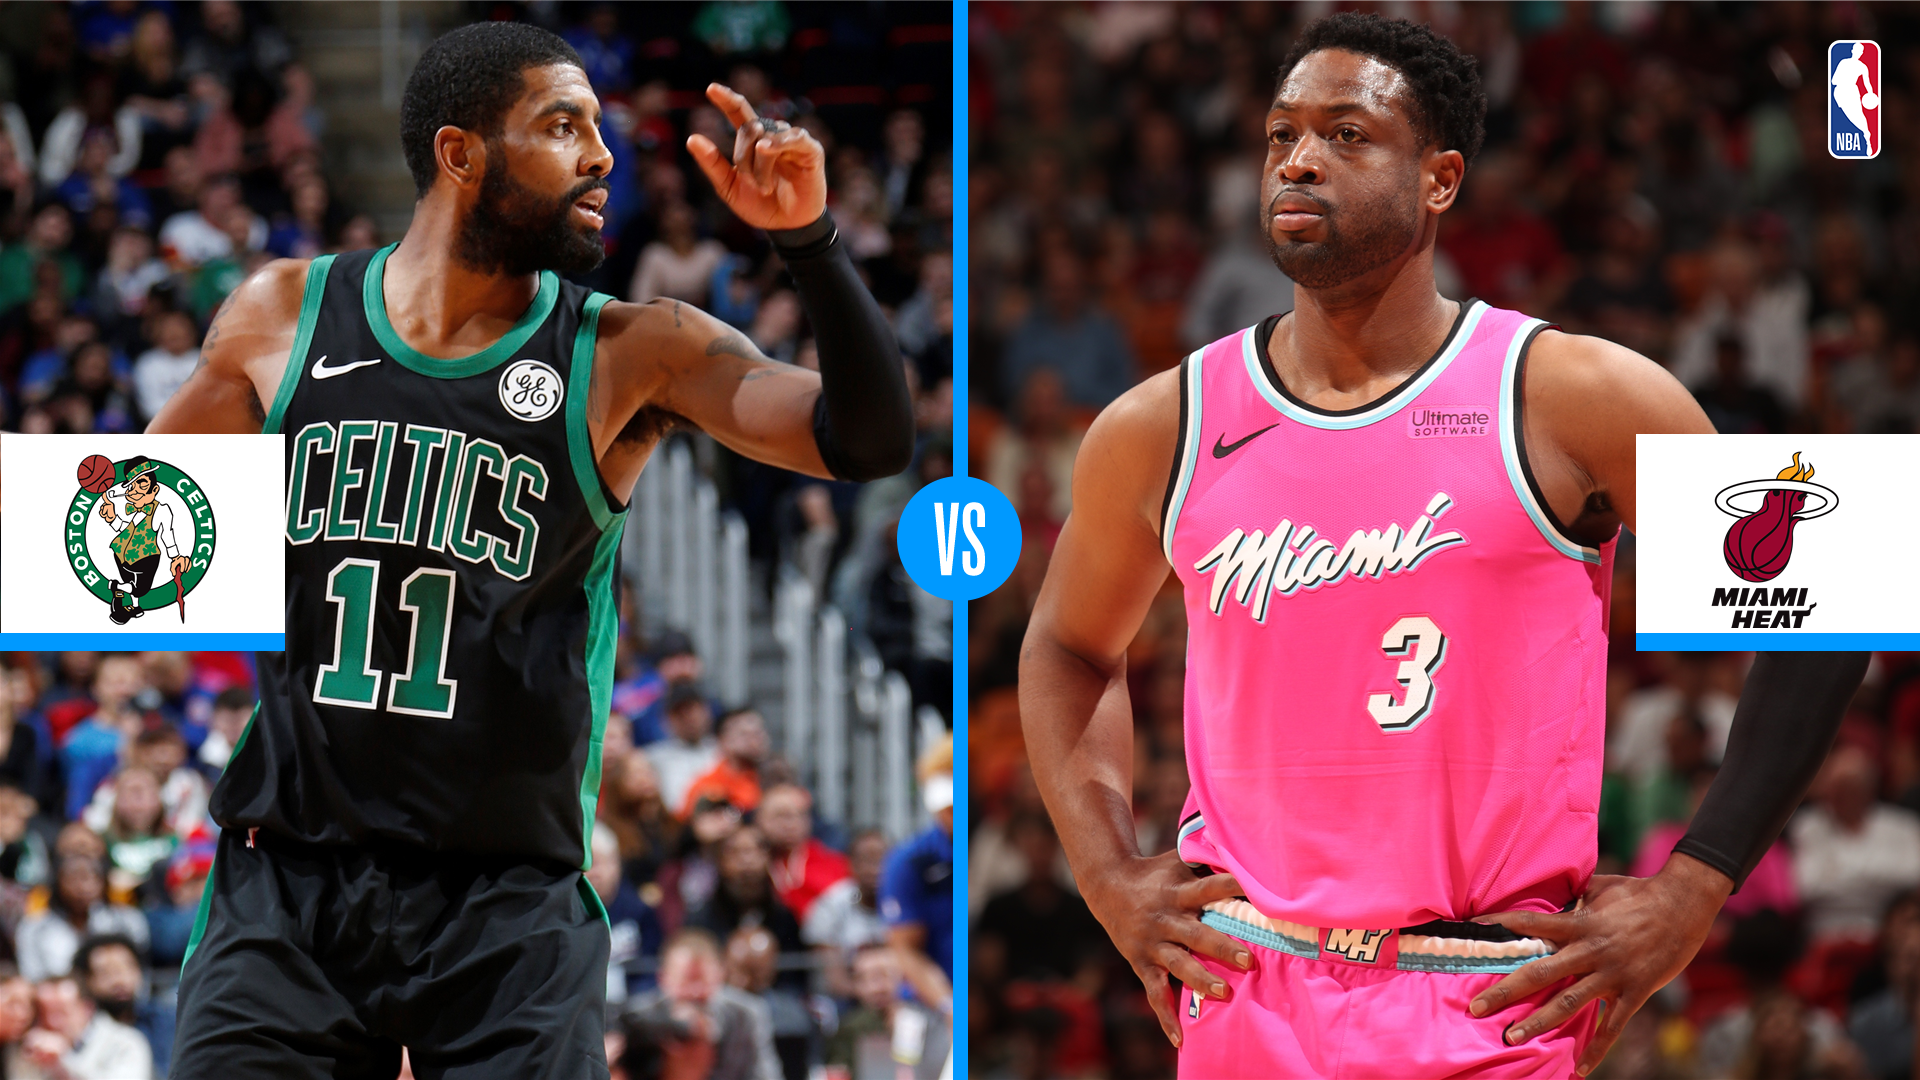 Boston Celtics vs Miami Heat: Game preview, live stream, TV channel, start time | NBA ...